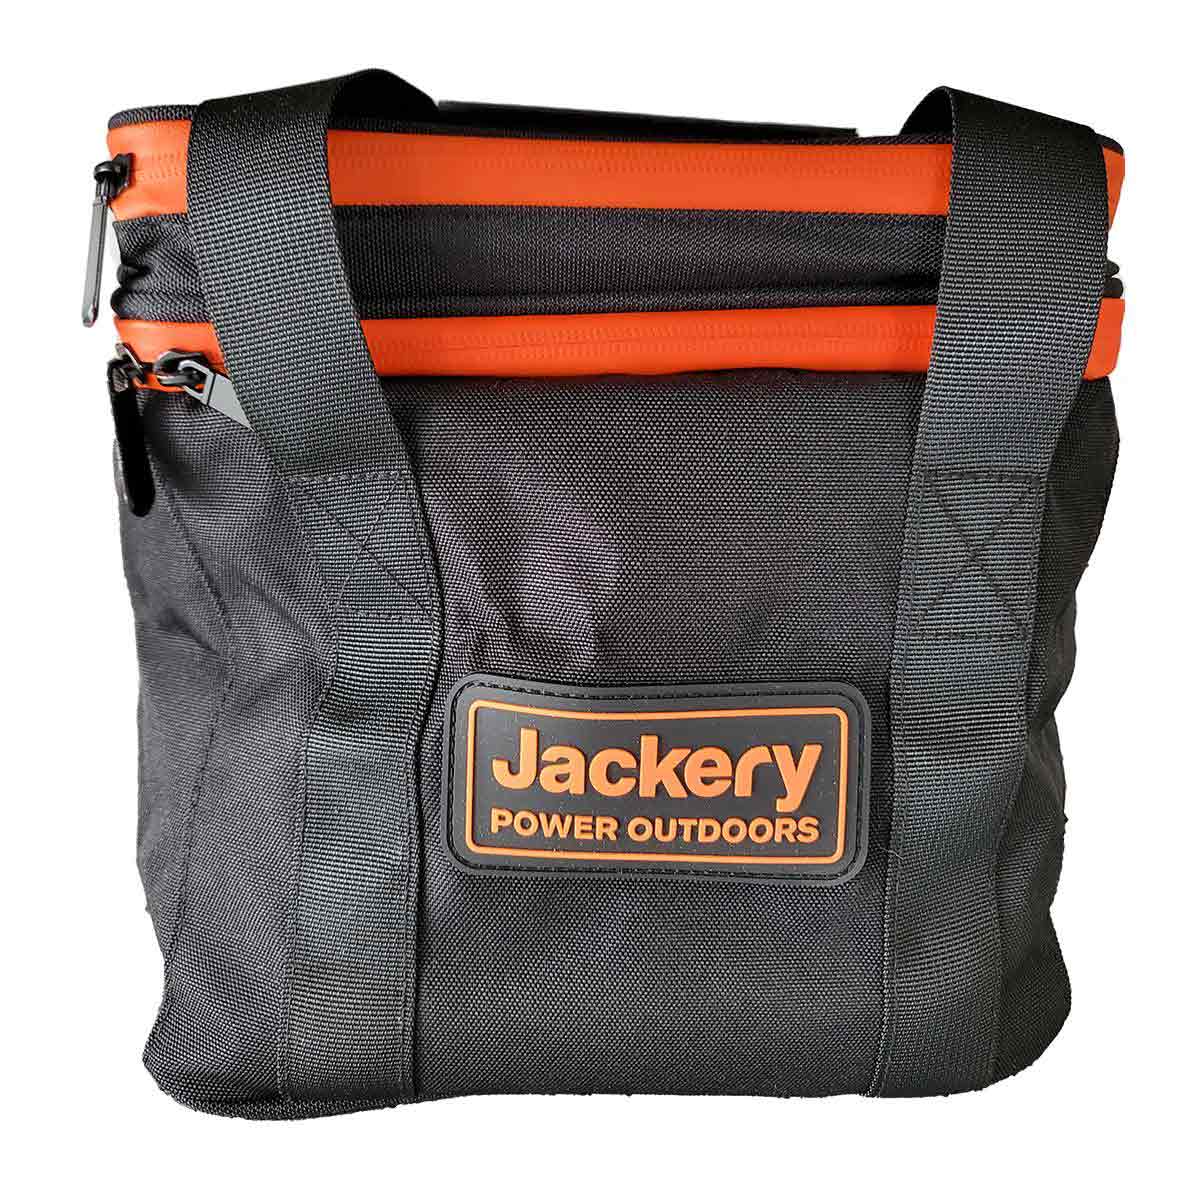 Jackery Tasche für Explorer 240